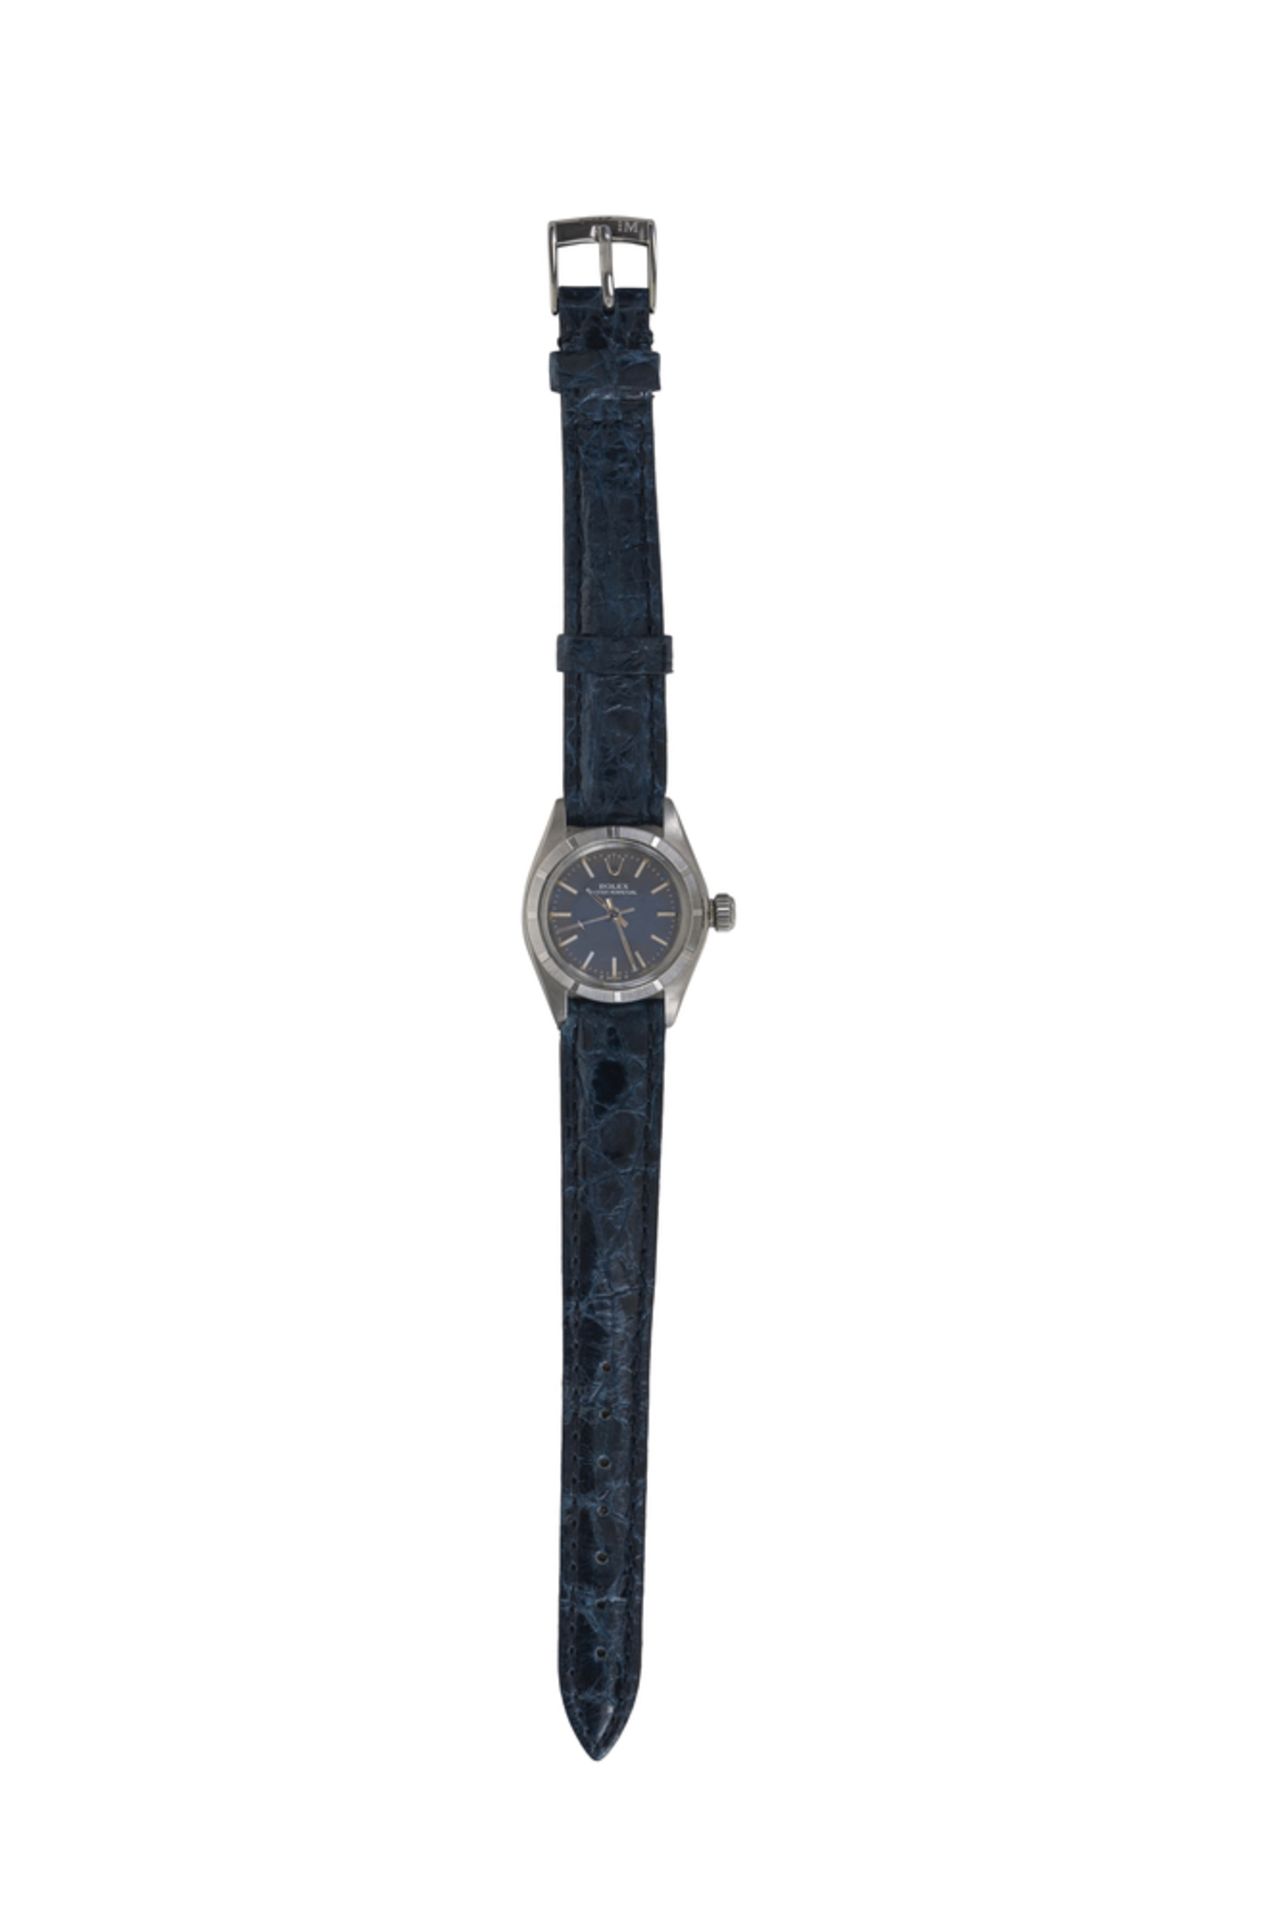 Rolex. Orologio da polso da donna in acciaio - Image 2 of 3